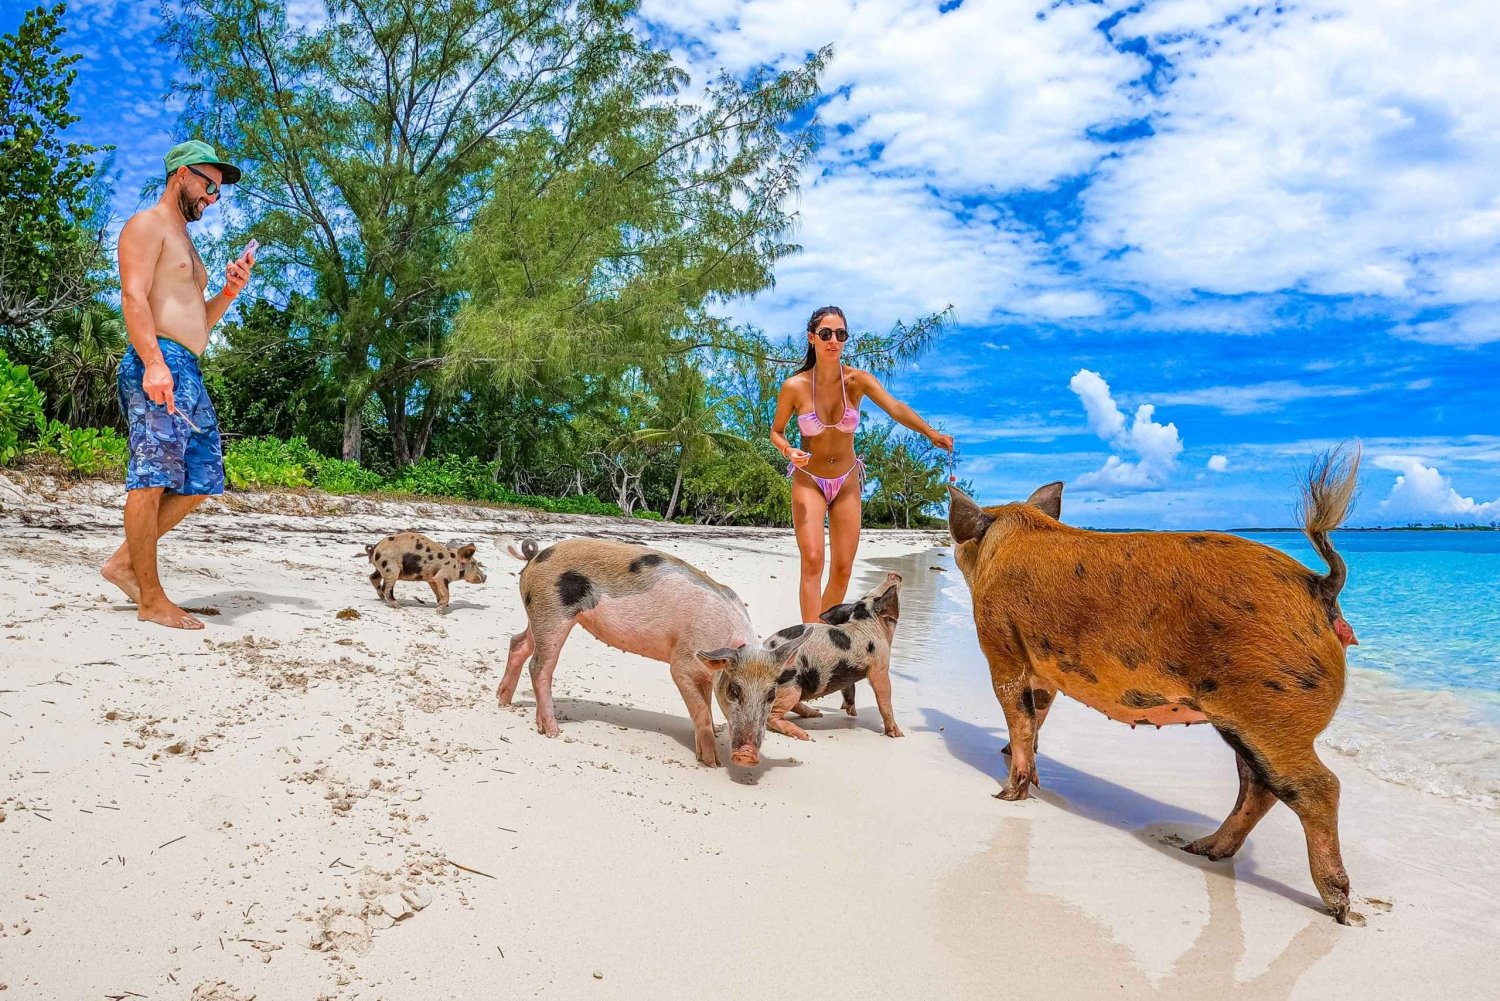 Isla de las Perlas: Playa de los Cerdos con almuerzo